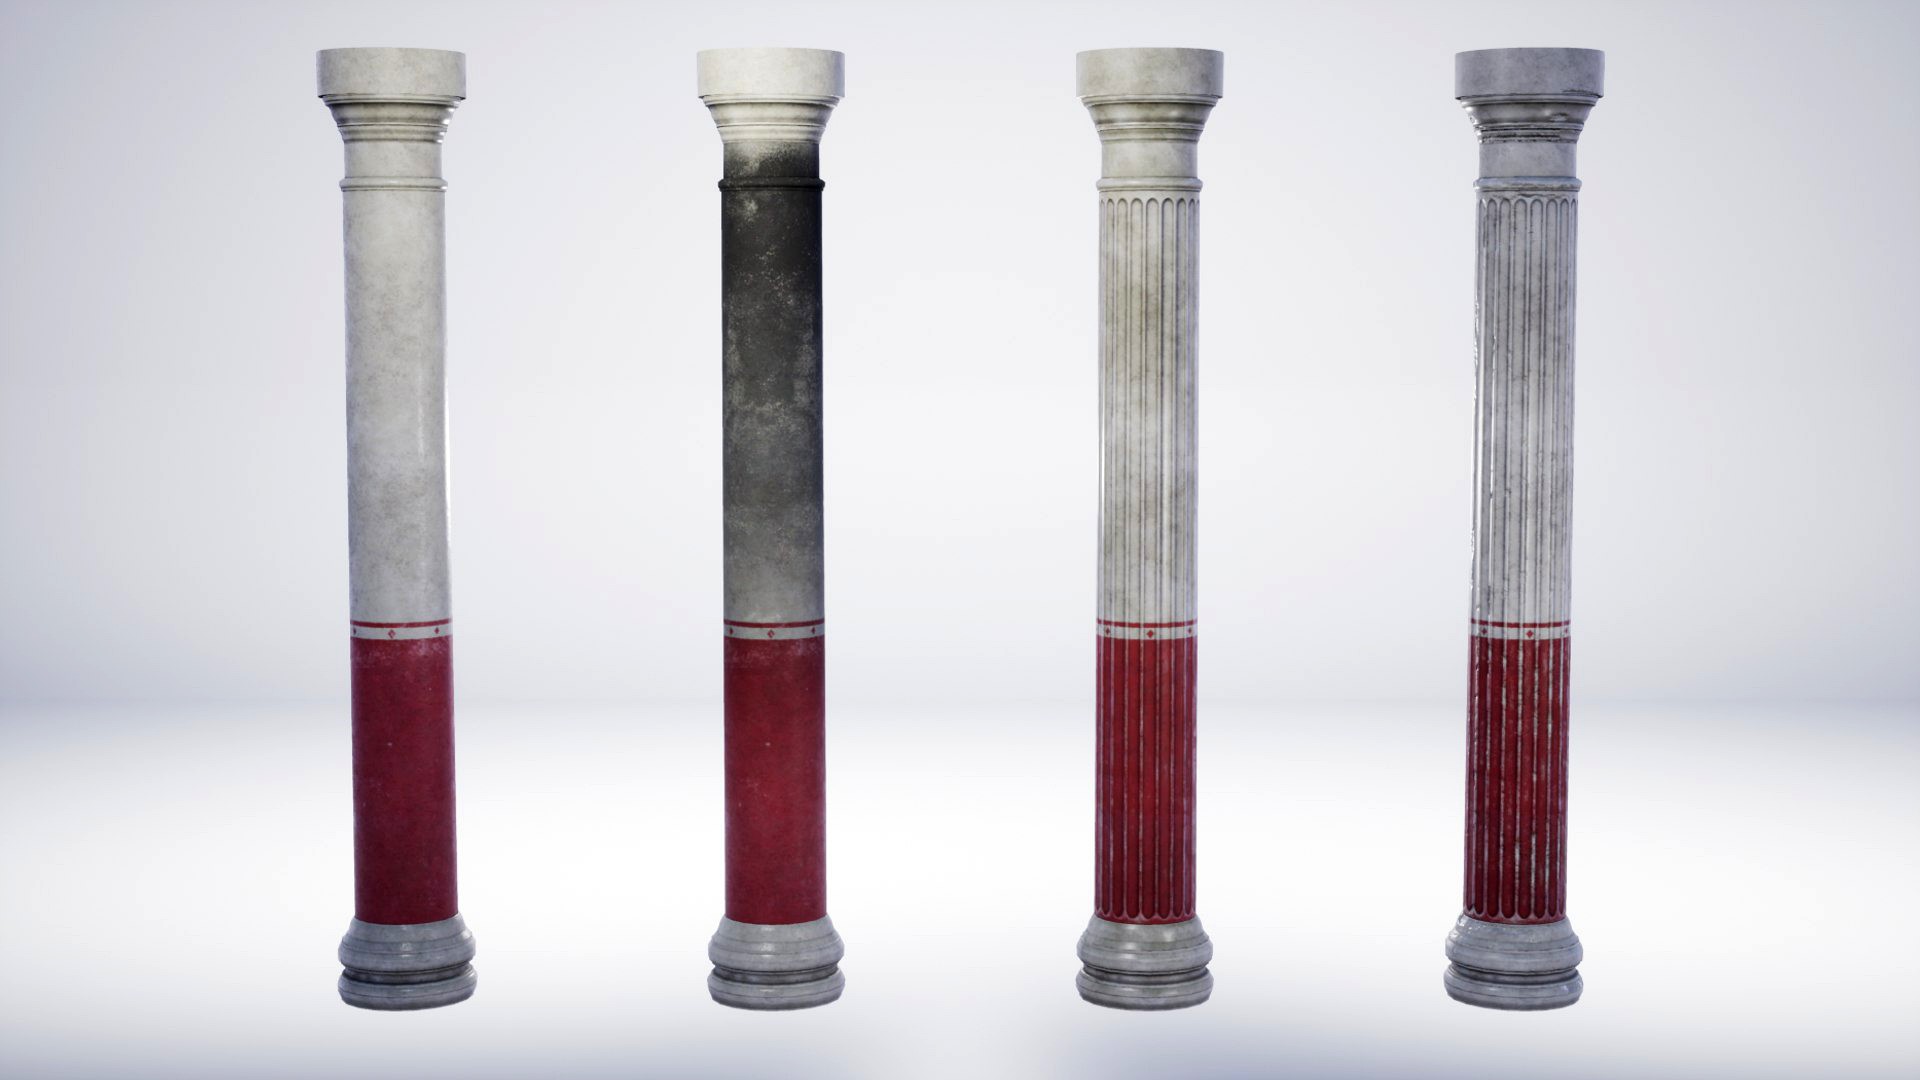 Roman Villa Columns - 4 Variations